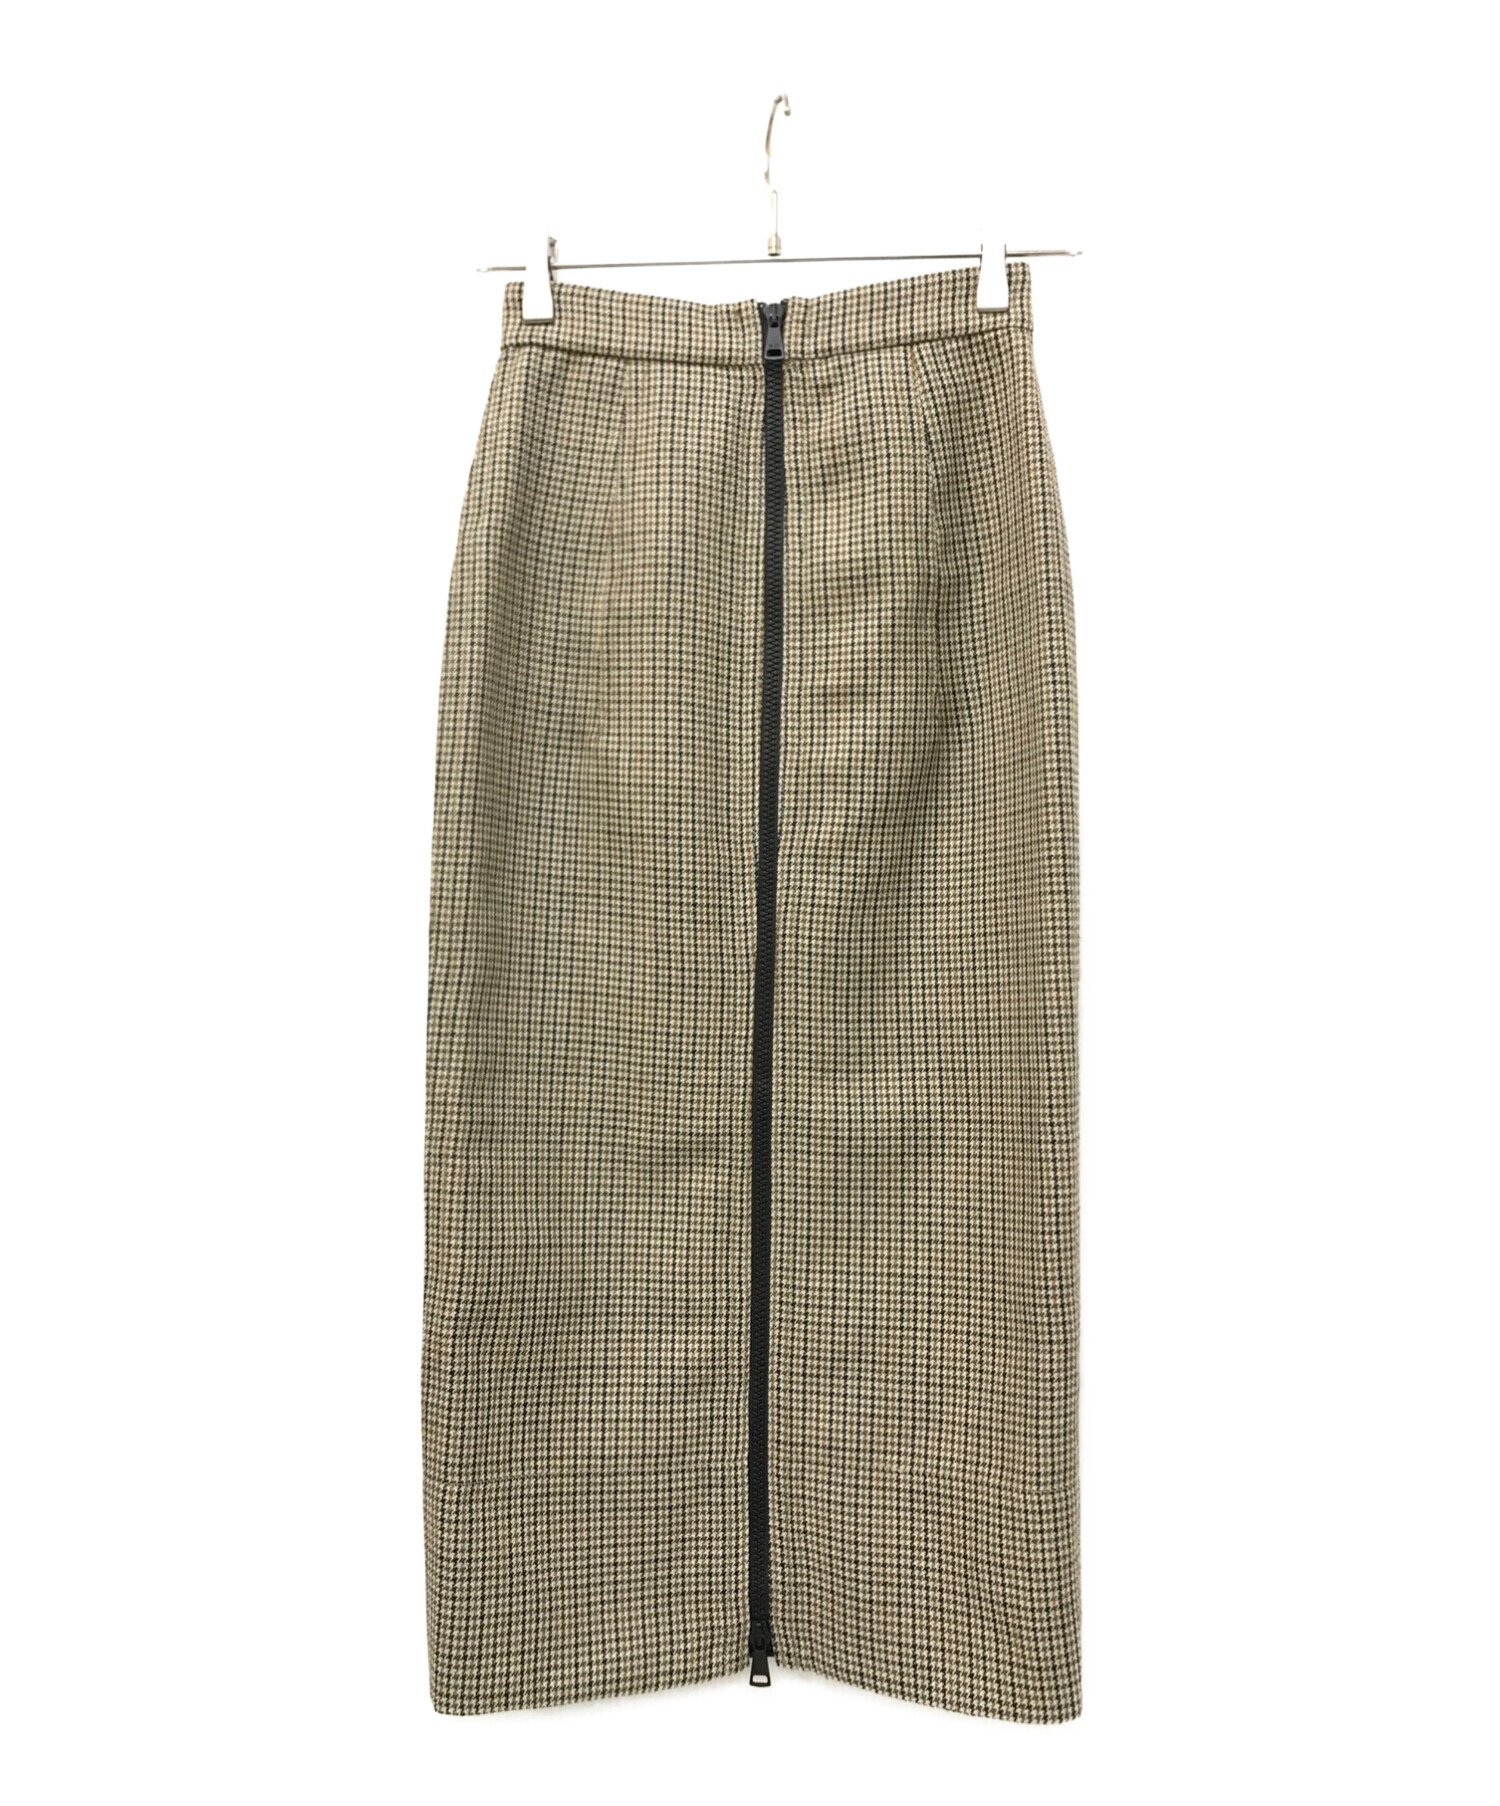 8,250円ヌメロンヴェントゥーノのロングスカート